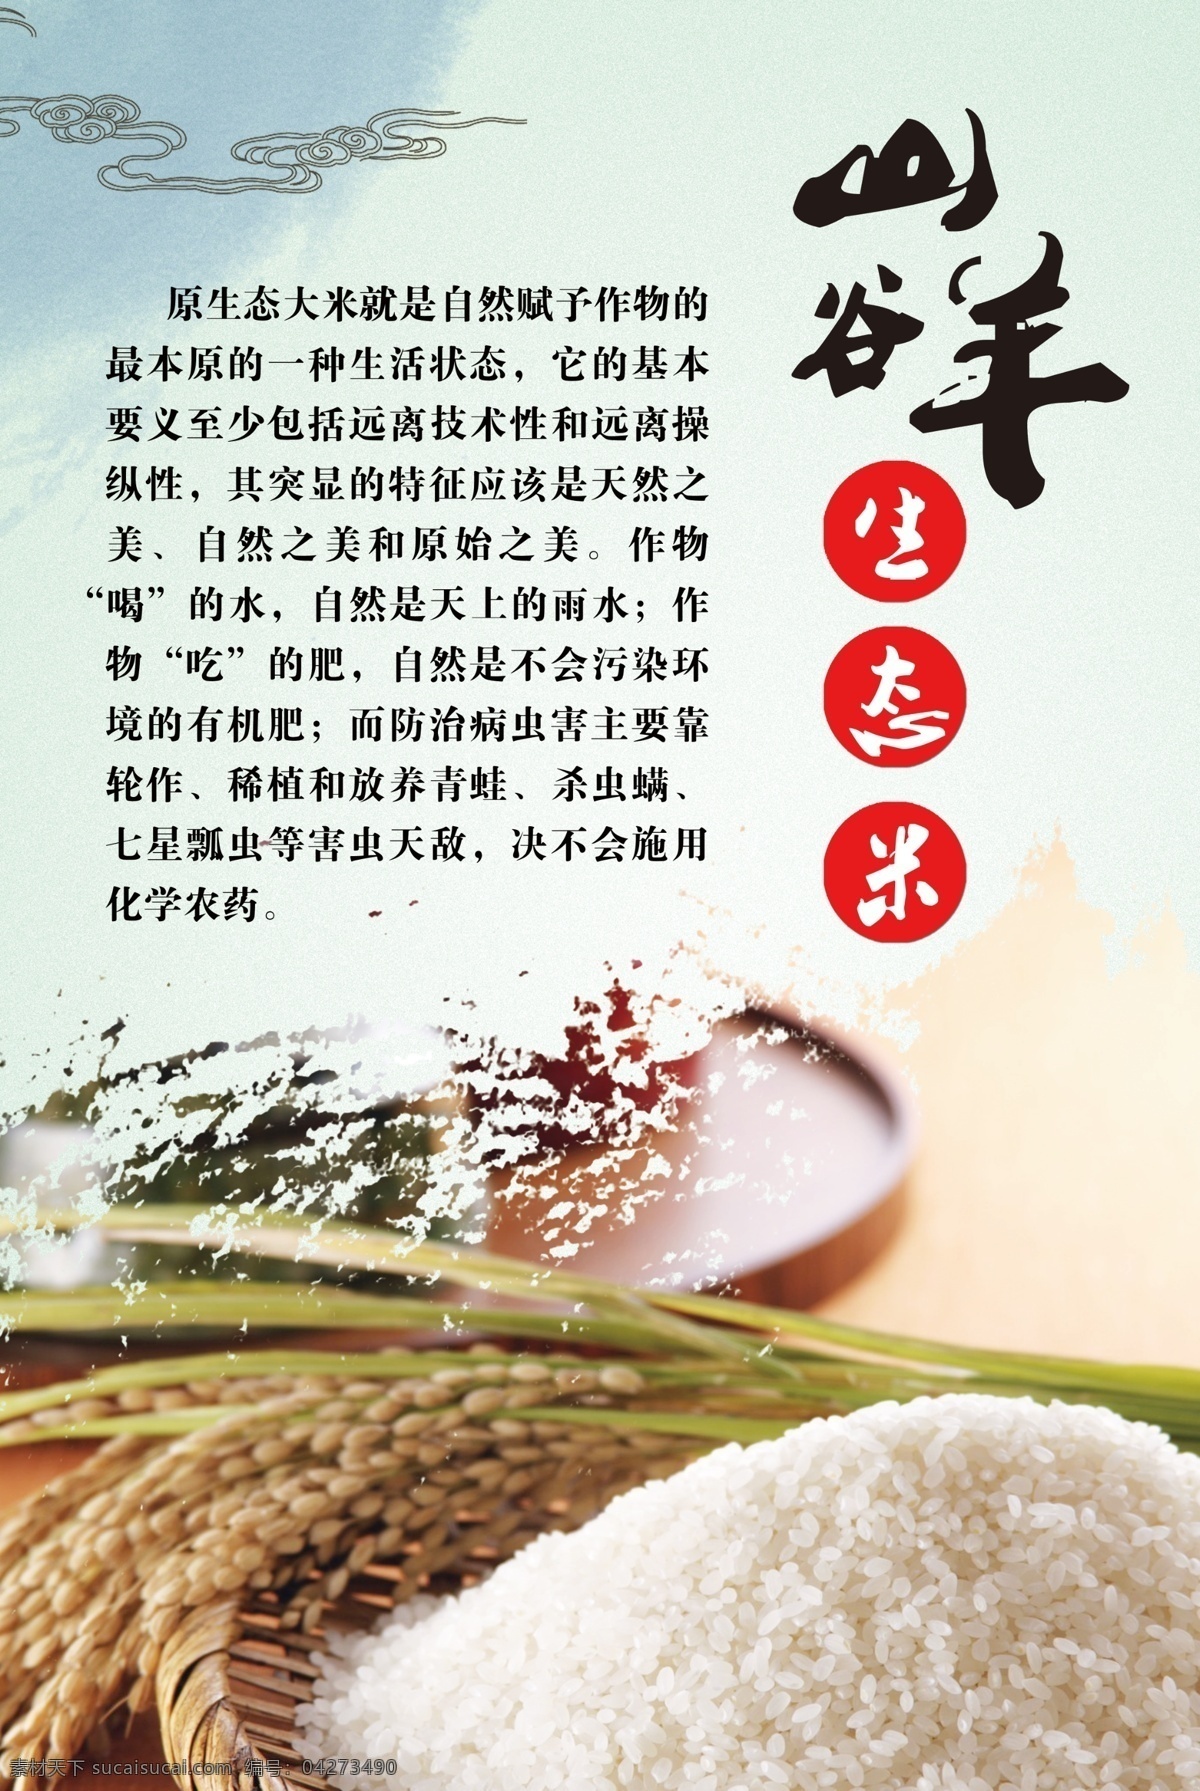 生态米 大米 种植 农业 海报